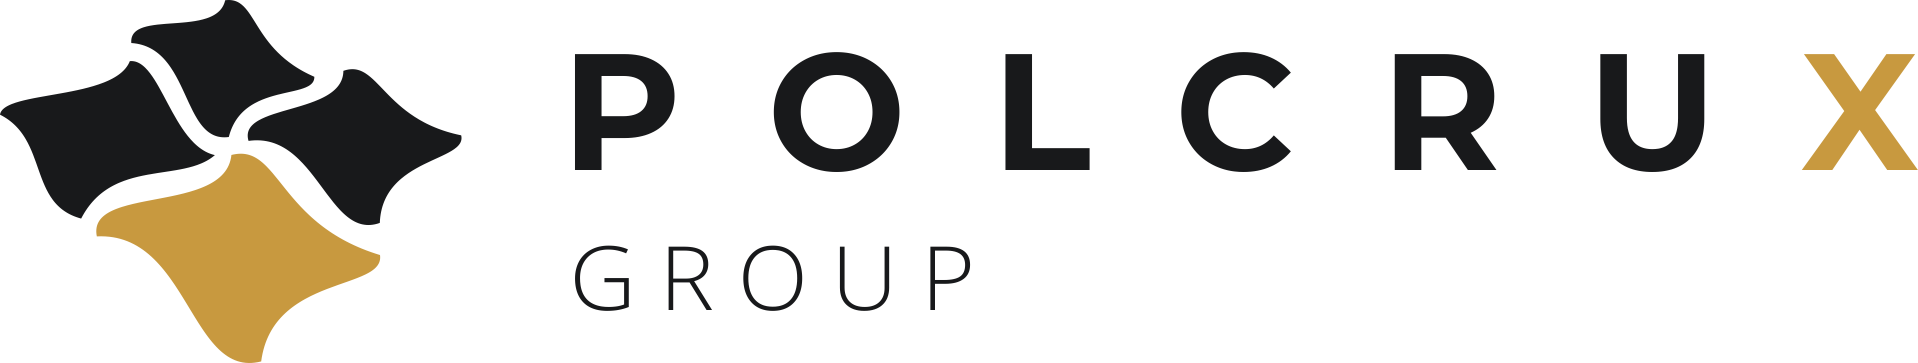 Polcrux Group